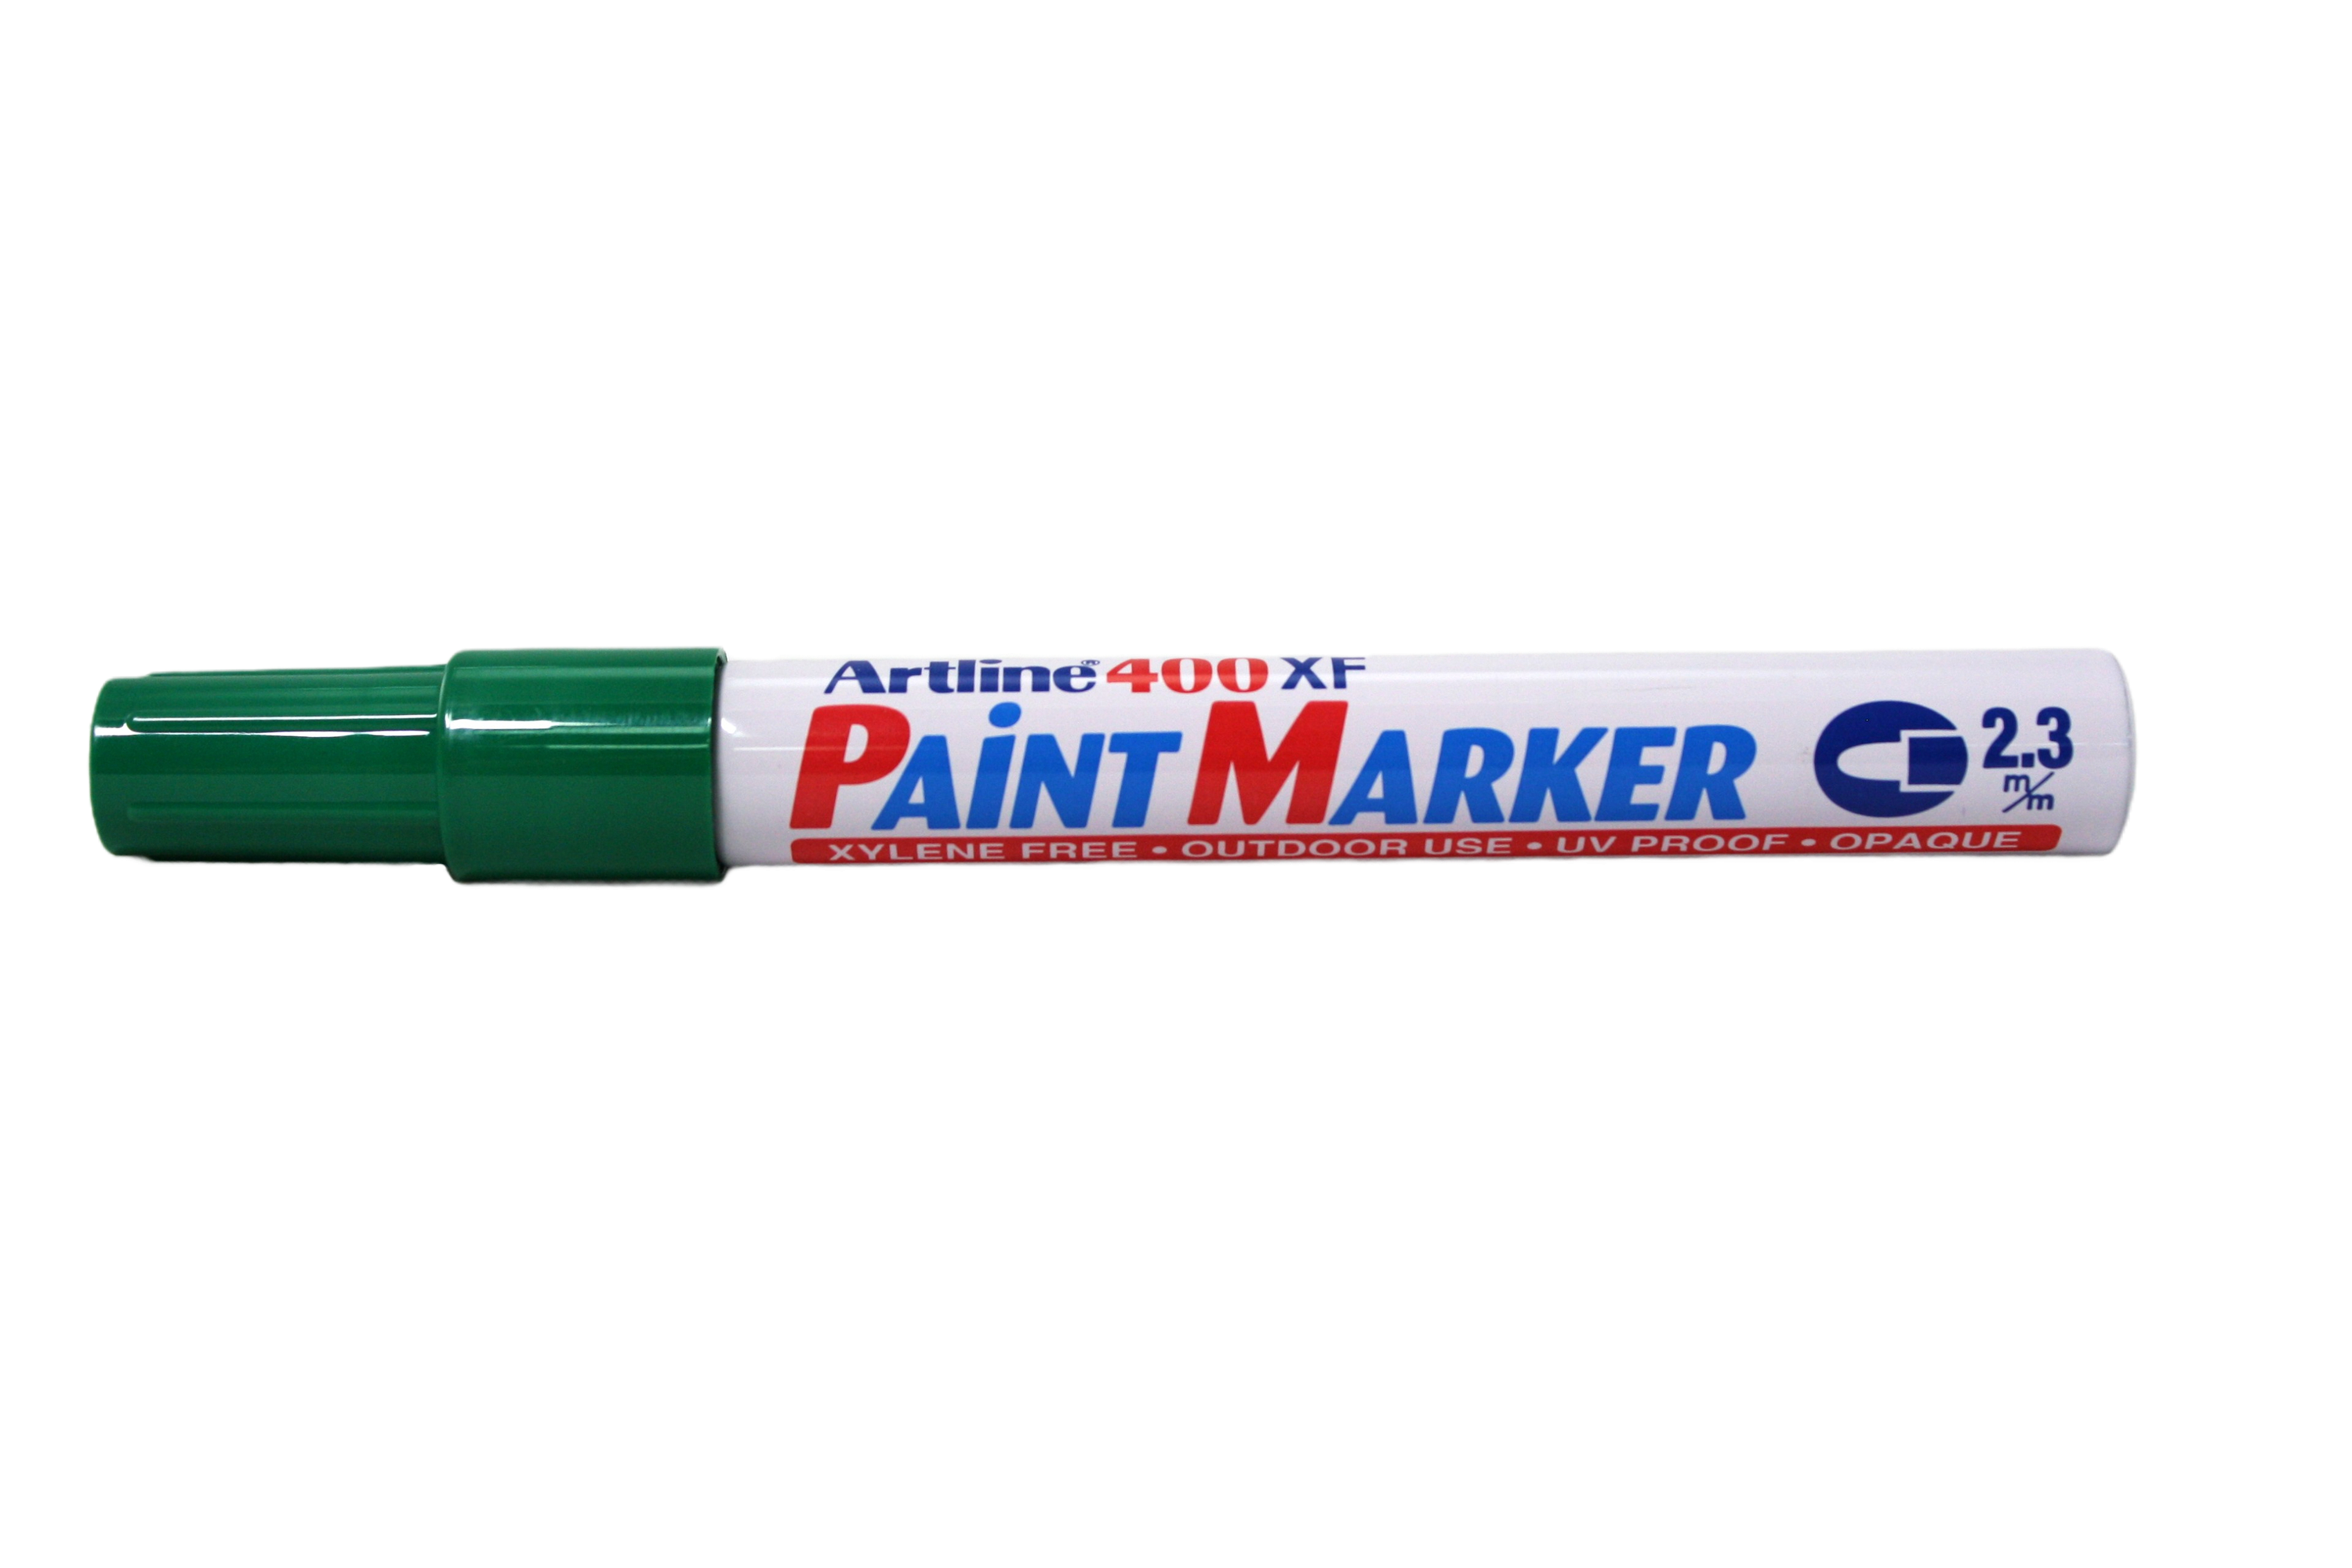 Artline Paint Marker 400XF, green, lid on